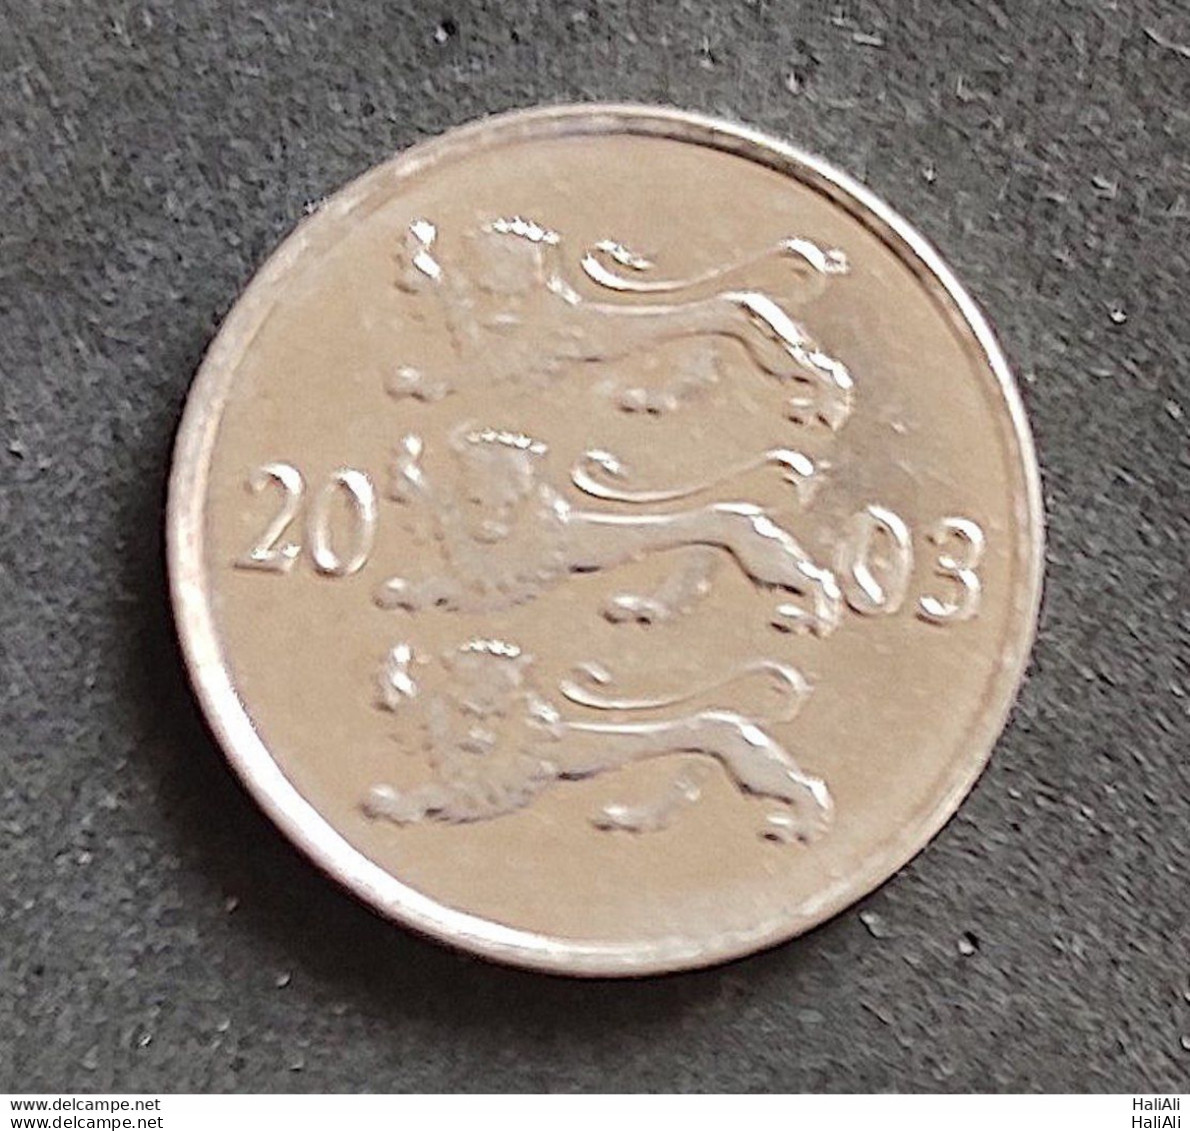 Coin Estonia 2003 20 Senti 1 - Estland